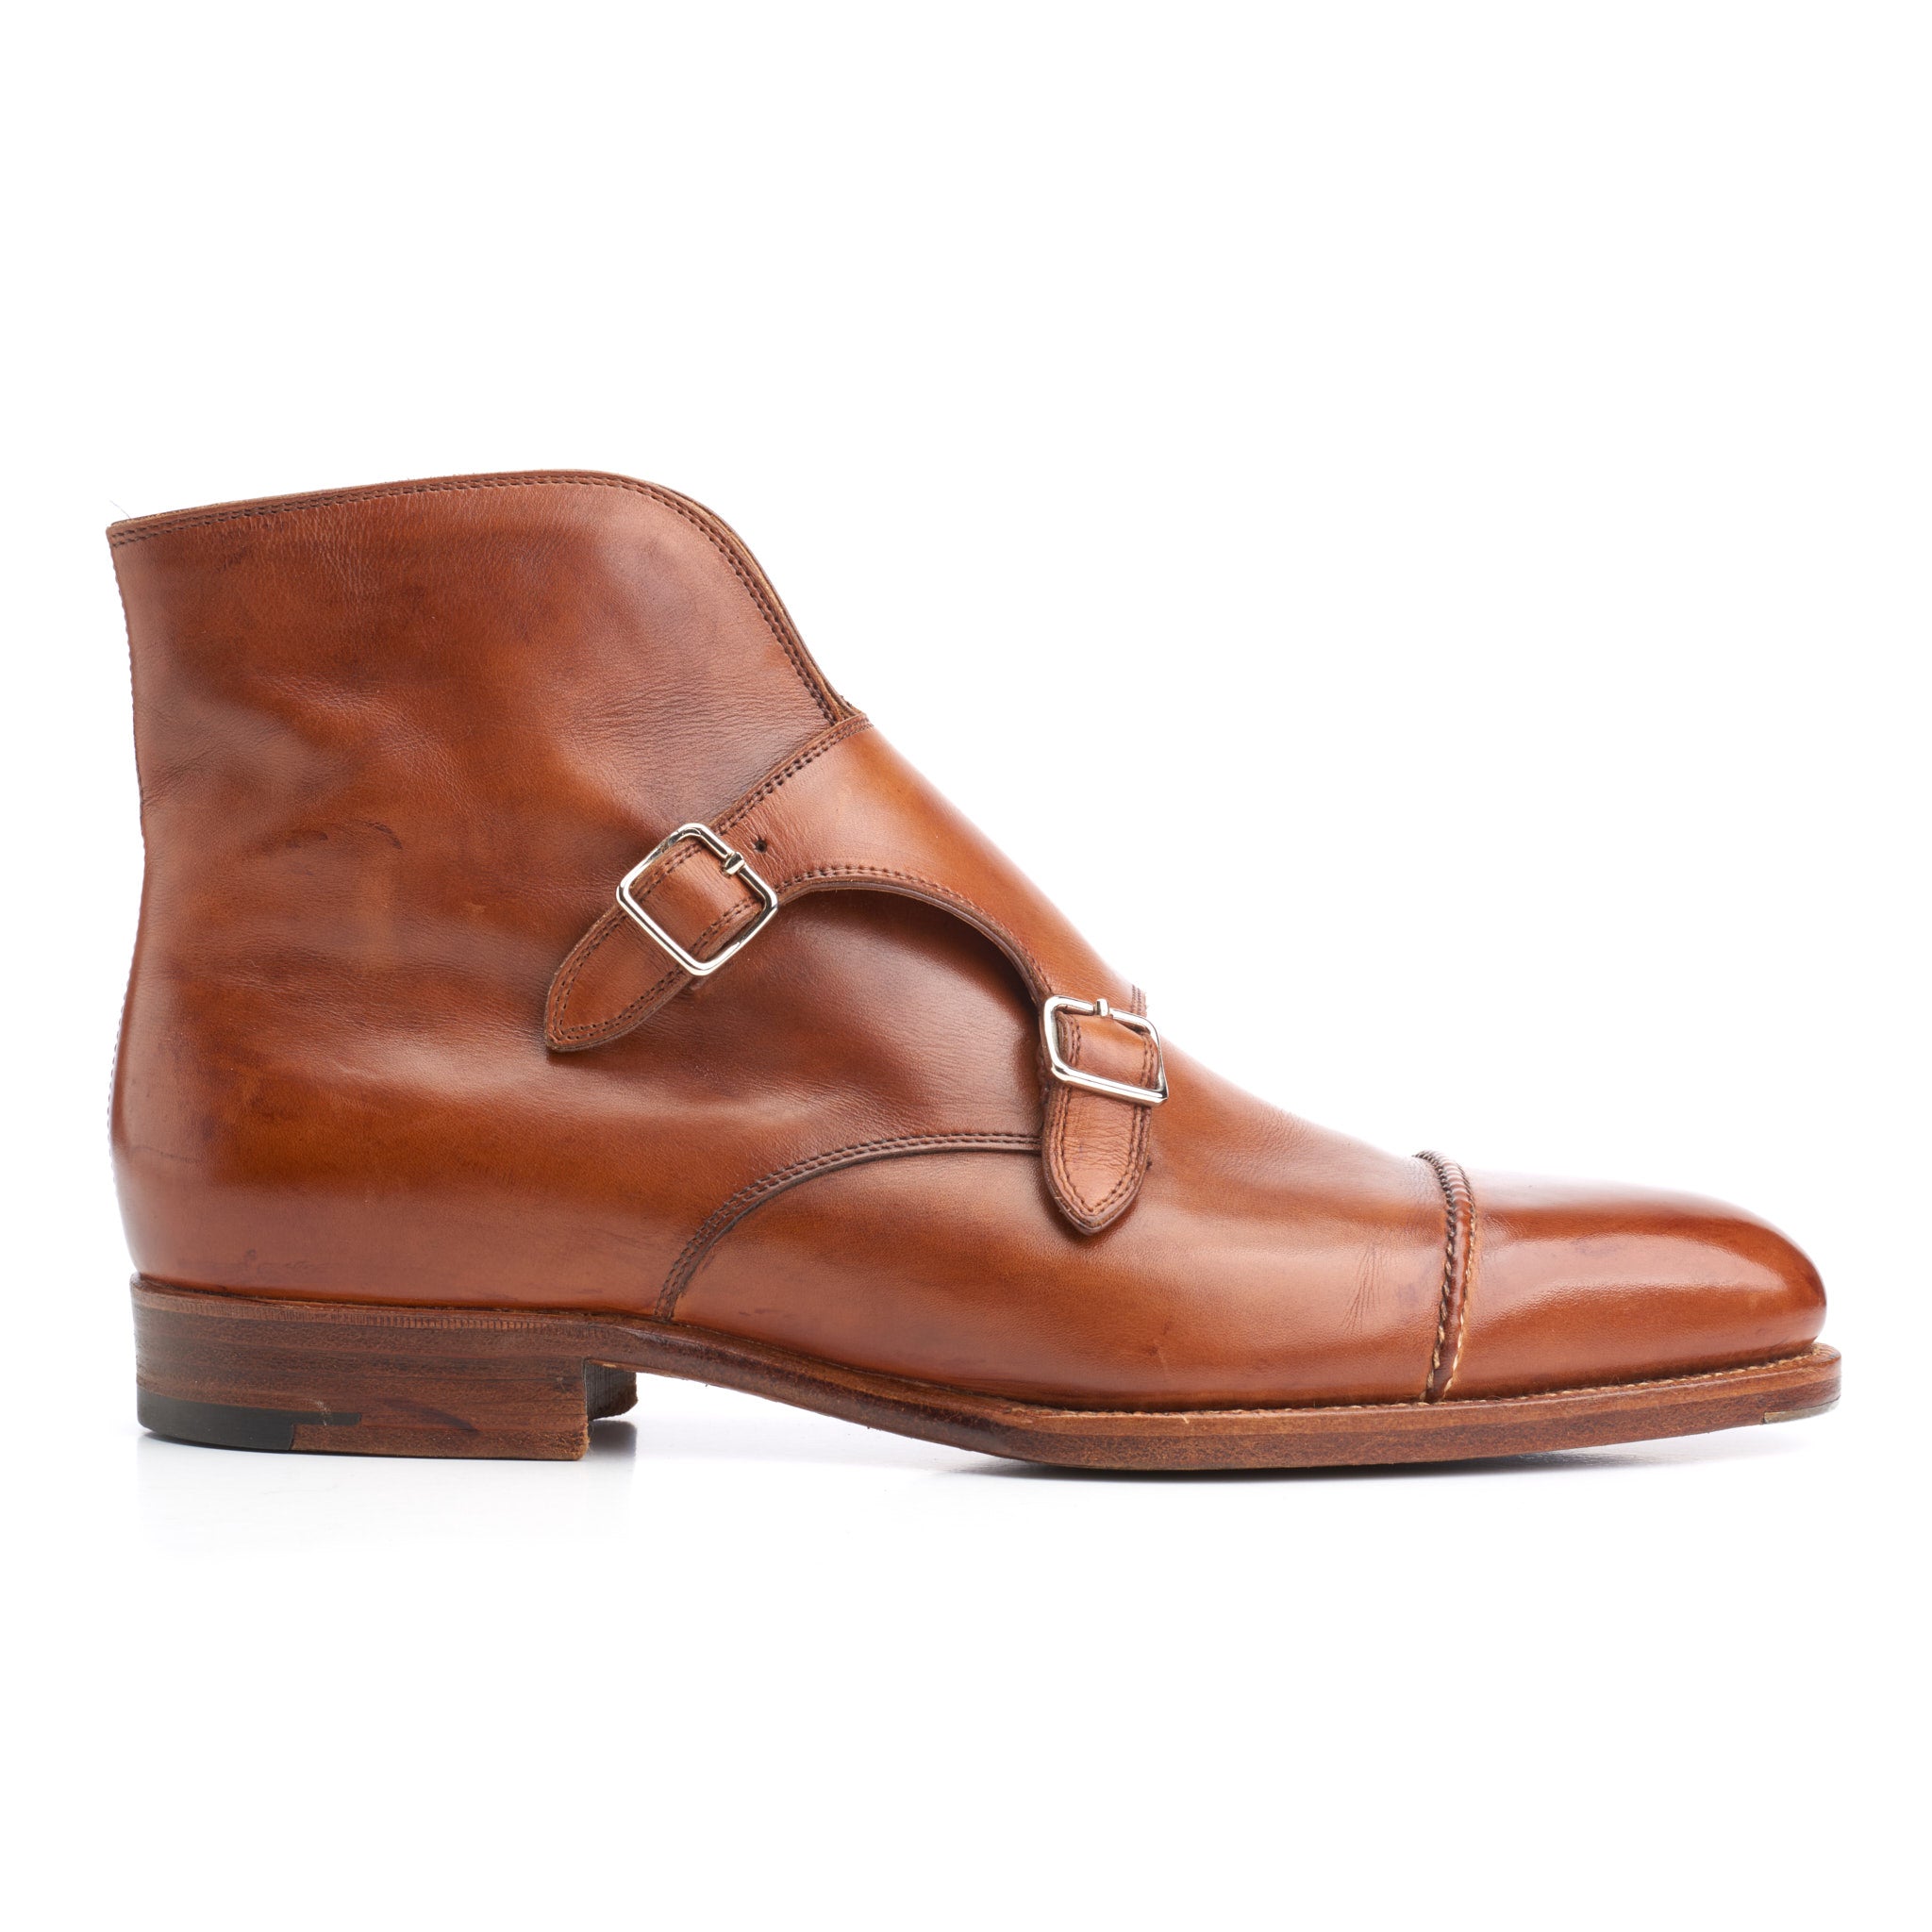 SAINT CRISPIN'S MOD 541 Cognac Leather Double Monk Boots Shoes 6.5E US 7 Trees SAINT CRISPIN'S